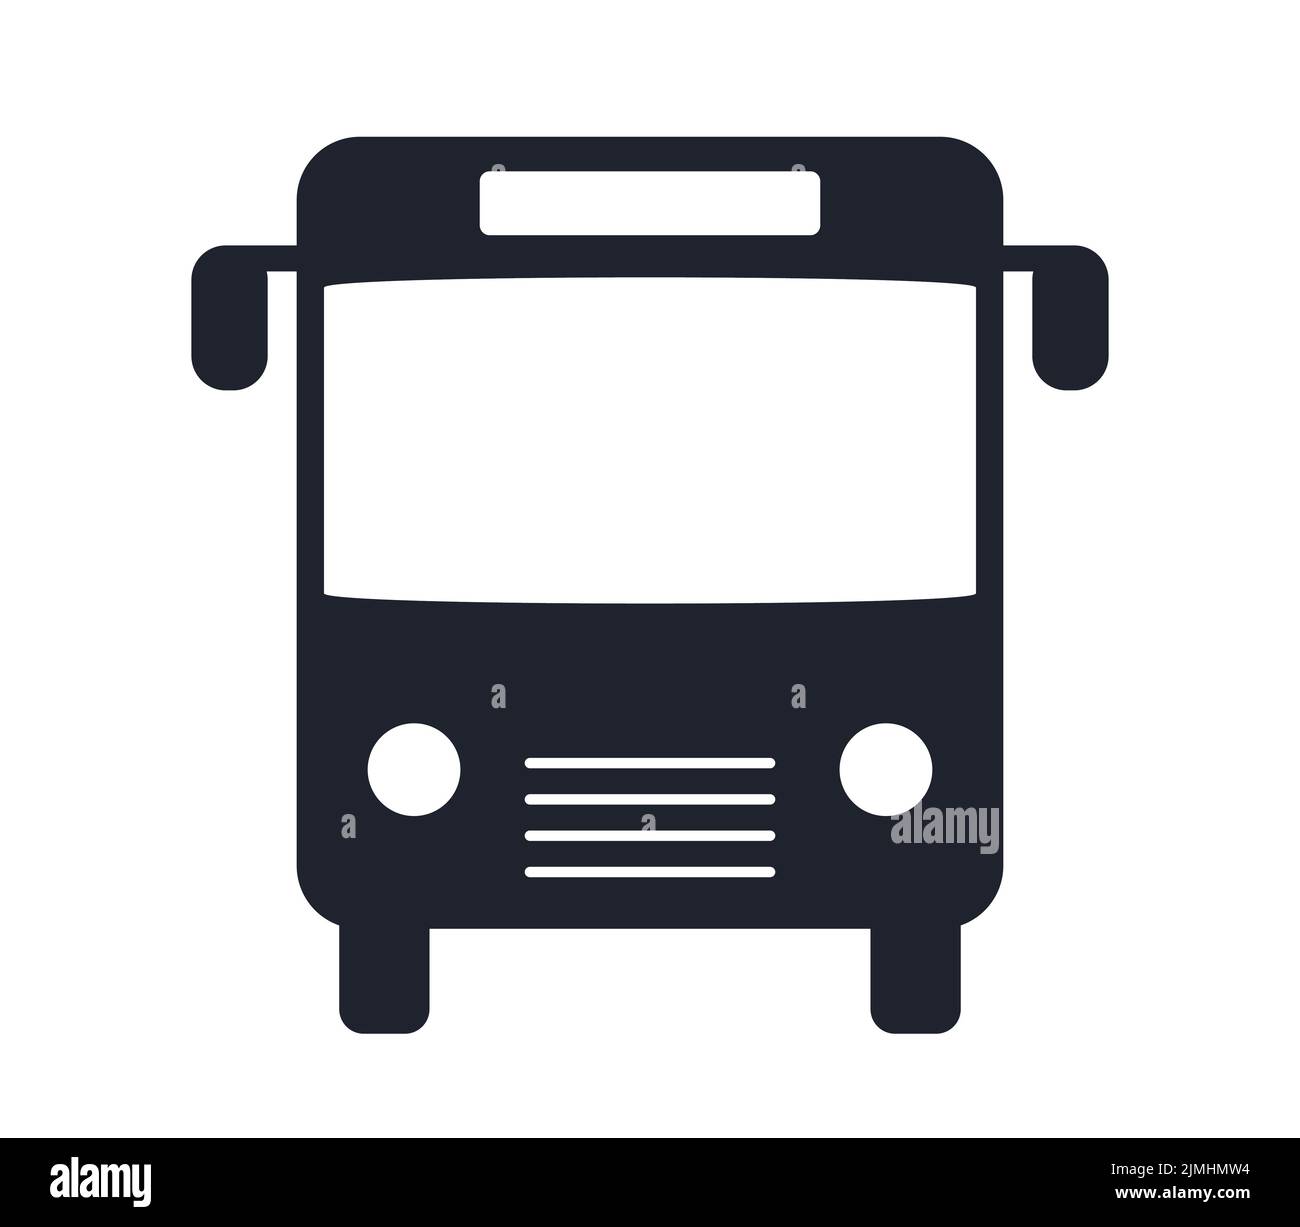 Símbolo de autobús y autobús o símbolo de estación de autobús icono de ilustración de vector de tráfico Ilustración del Vector